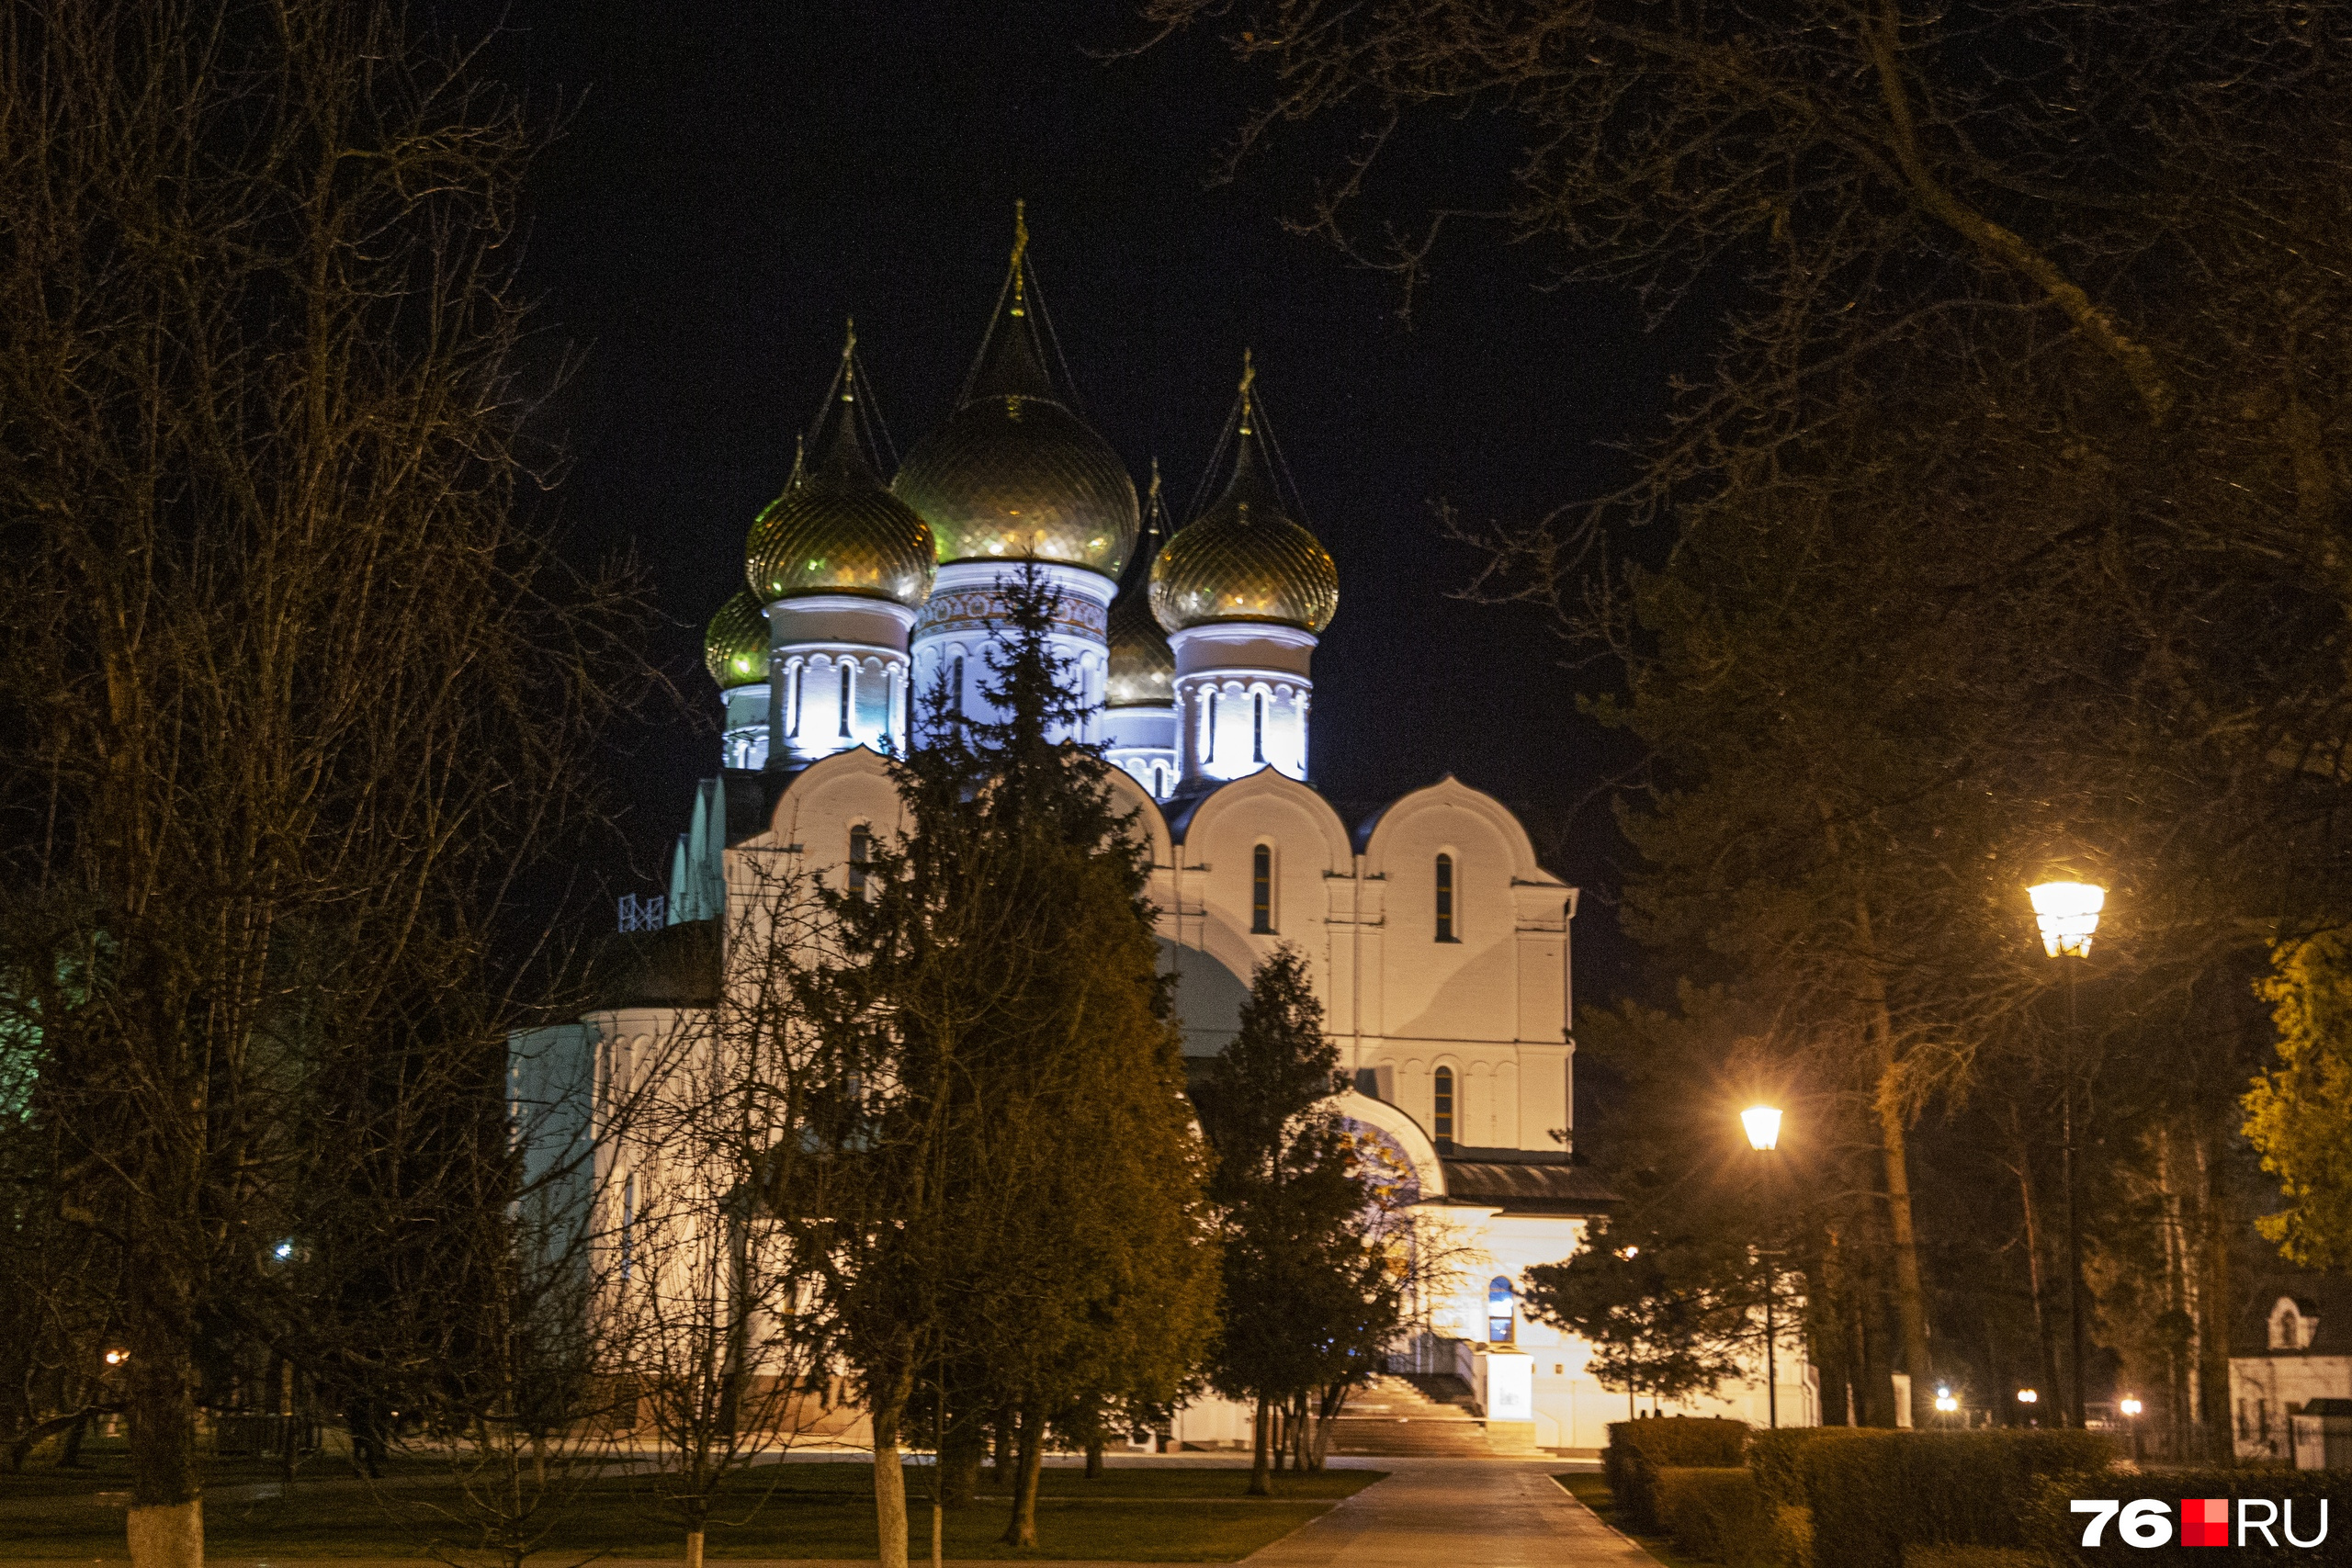 Во многих российских городах церкви стоят чуть ли не на каждом шагу. Лучше на их фоне не устраивать никаких акций и флешмобов